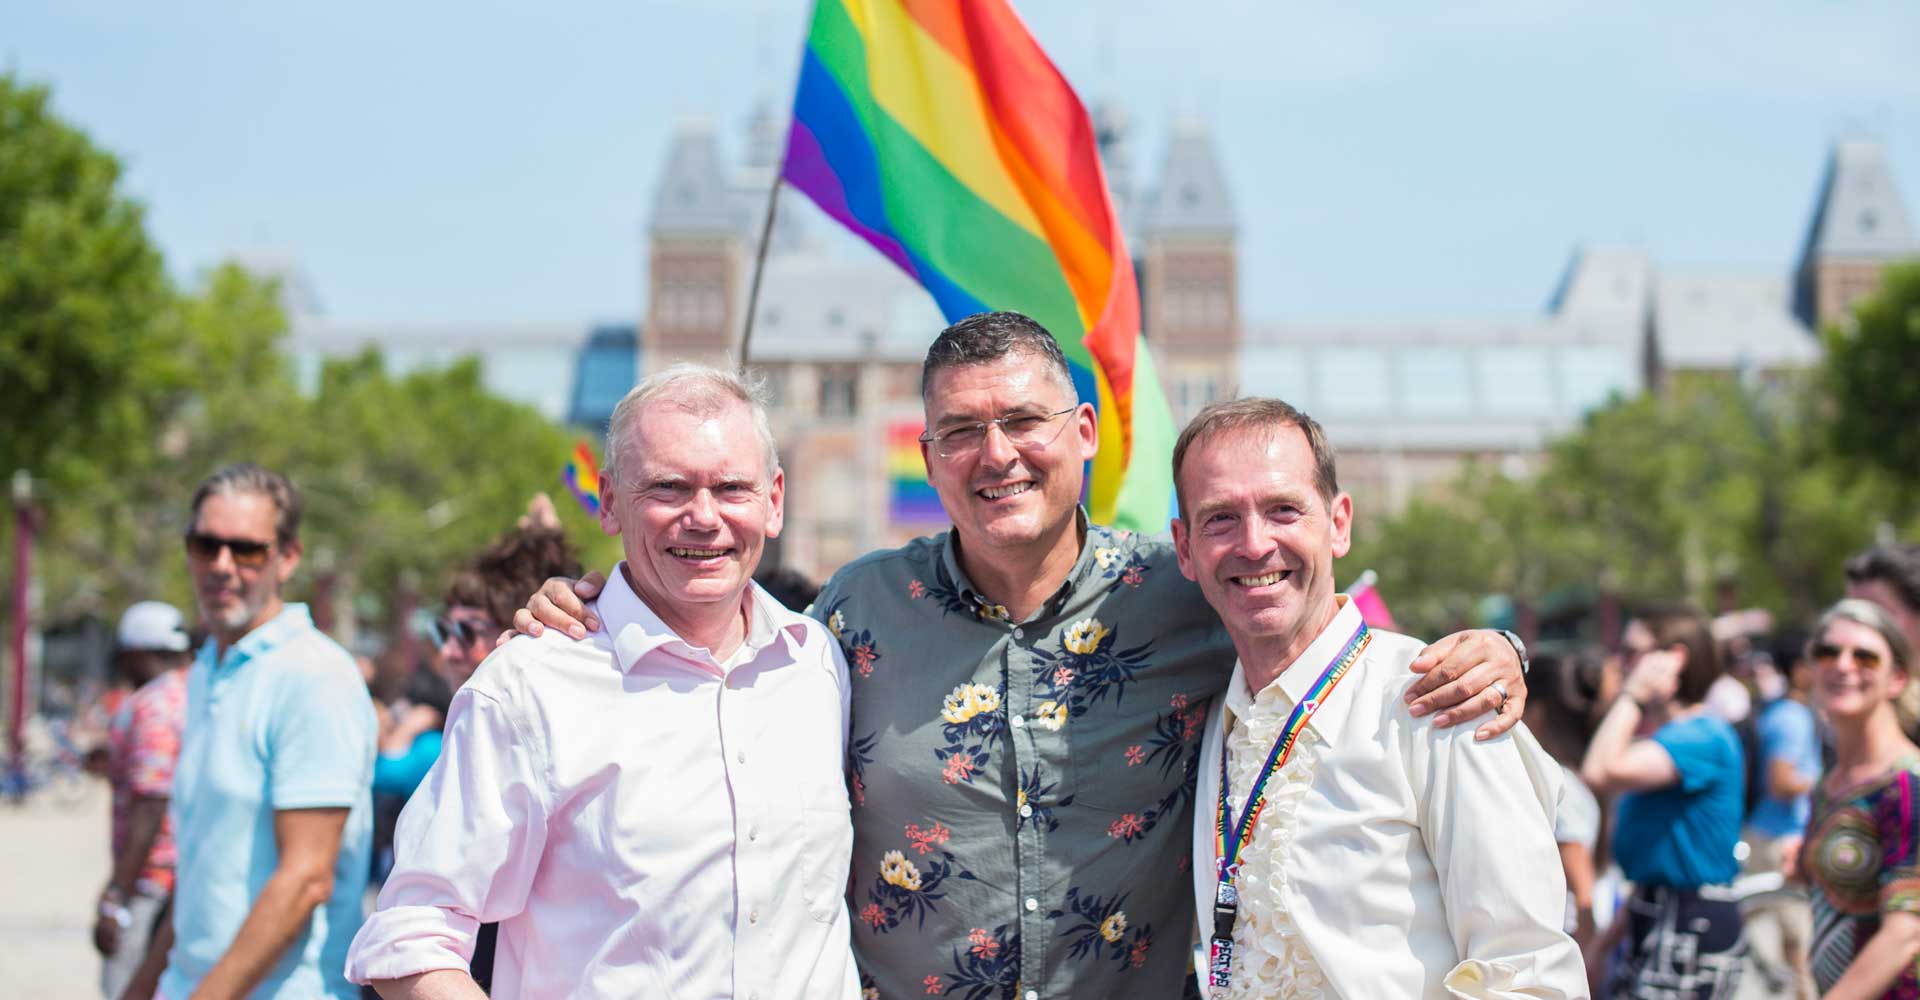 Pride2019 Peter Kramer, Ernst Verhoeven en Siep De Haan, de founding fathers van Amsterdam Pride